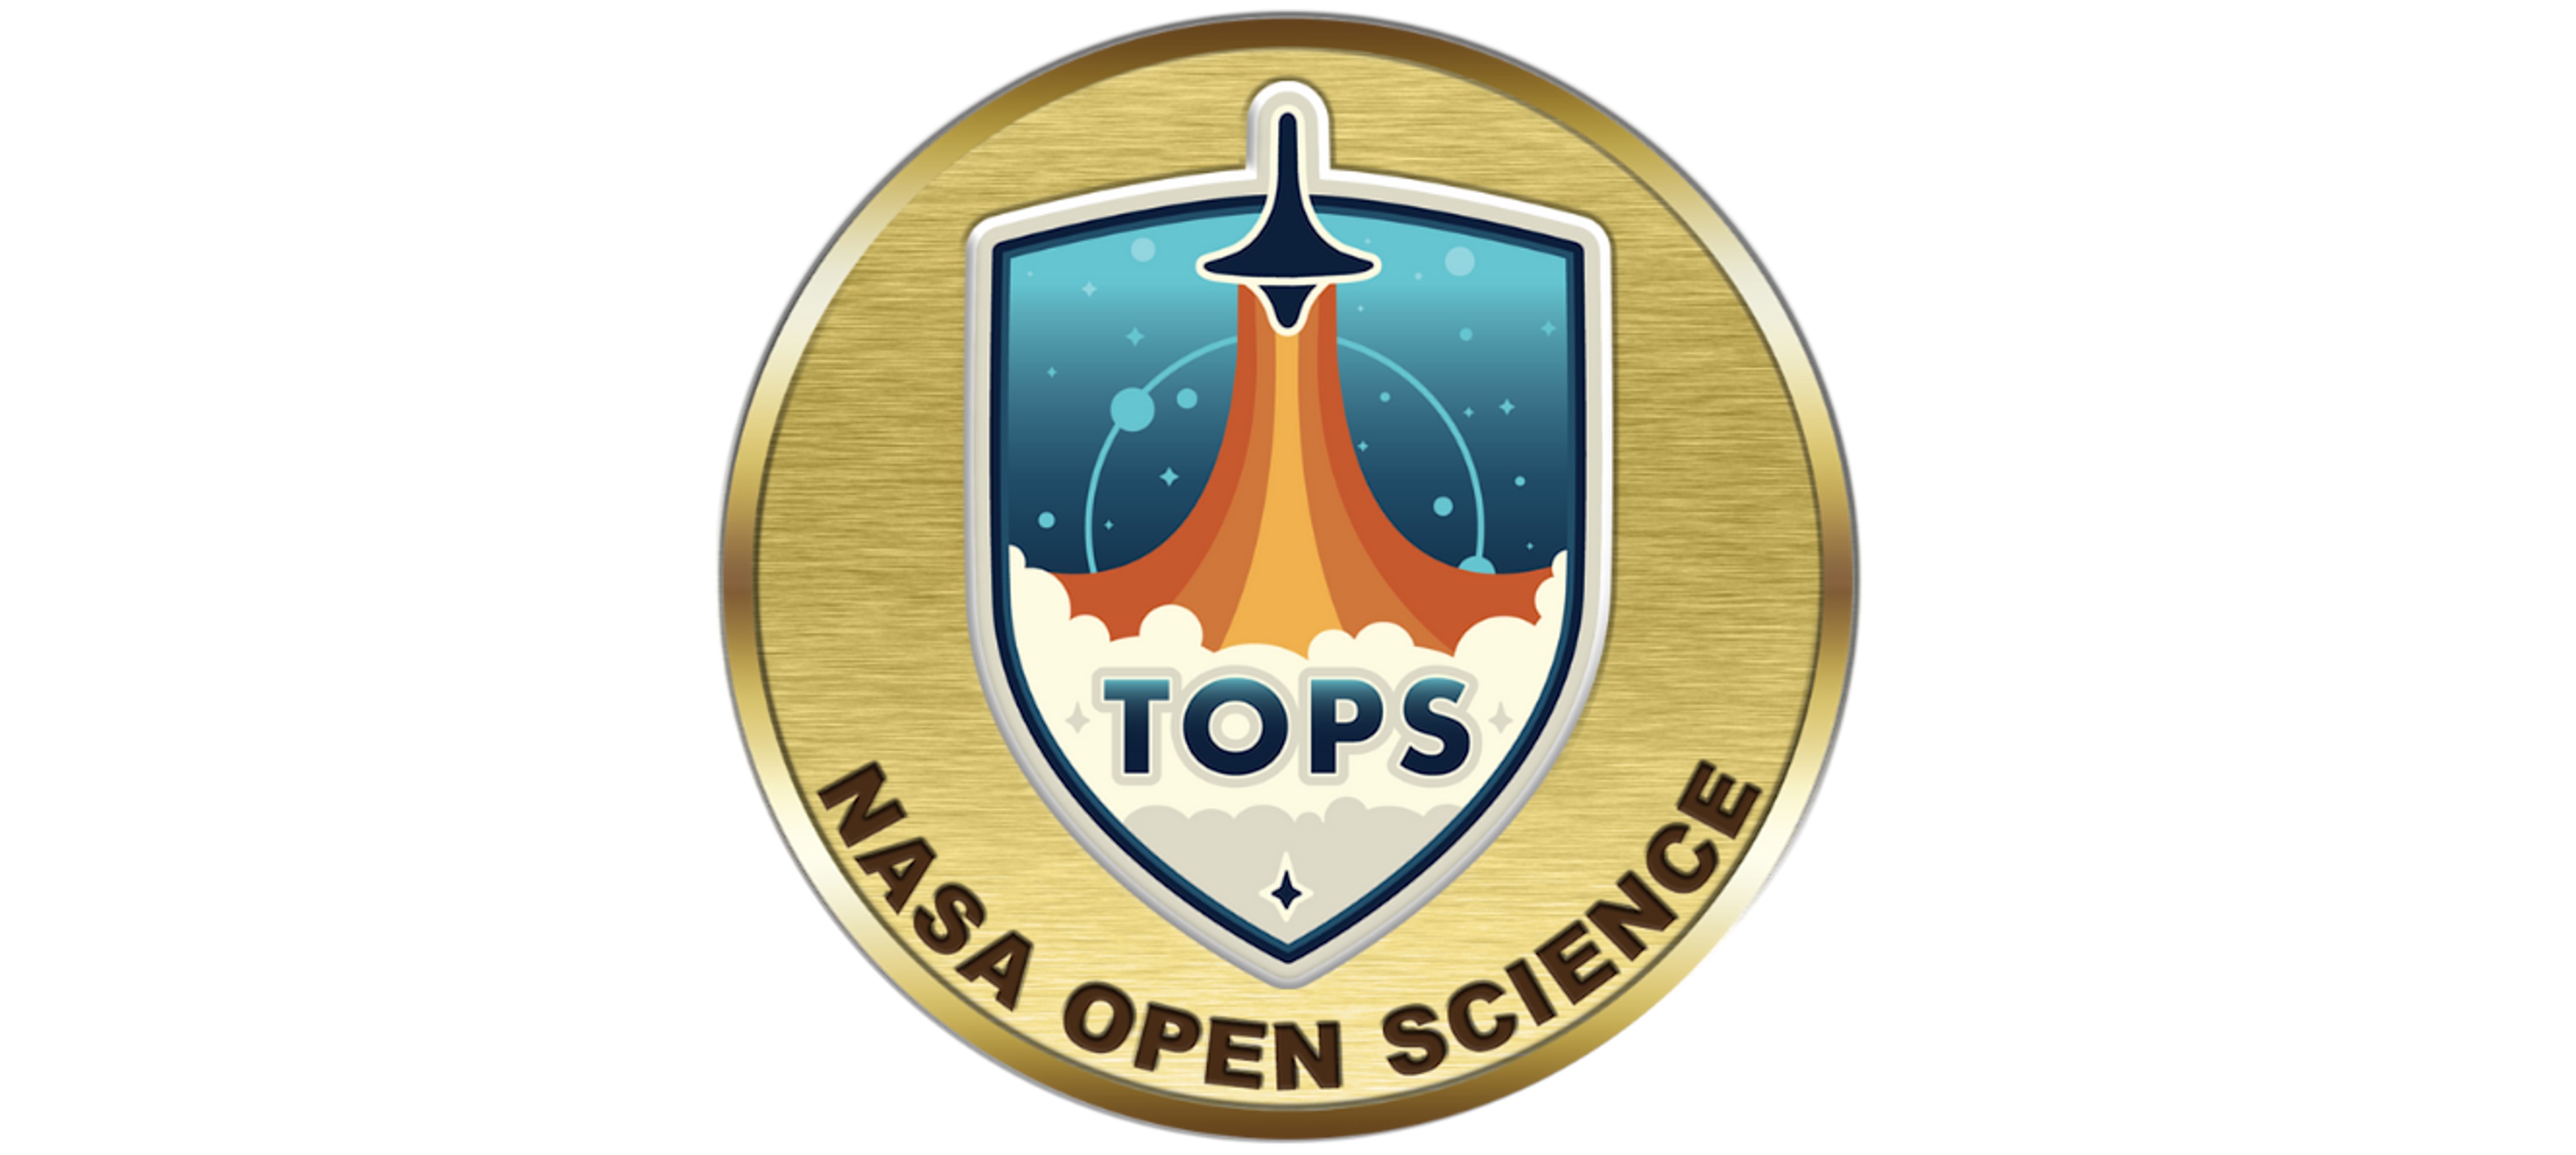 NASA TOPS Open Science badge